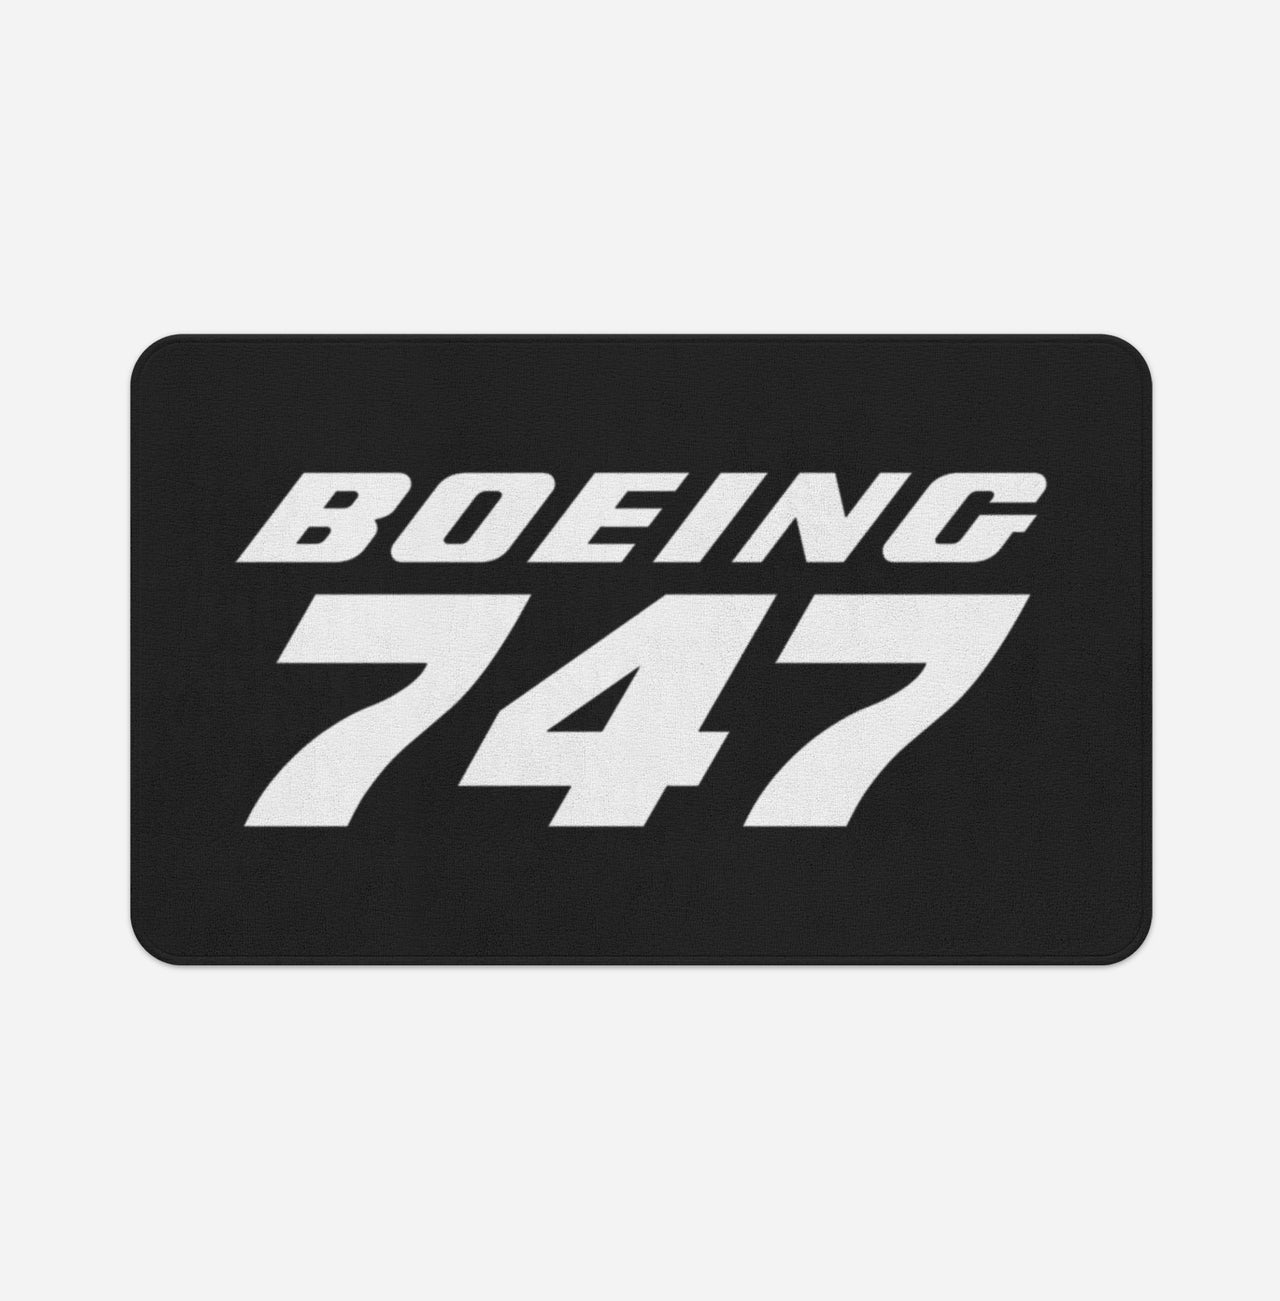 Boeing 747 & Text Designed Bath Mats